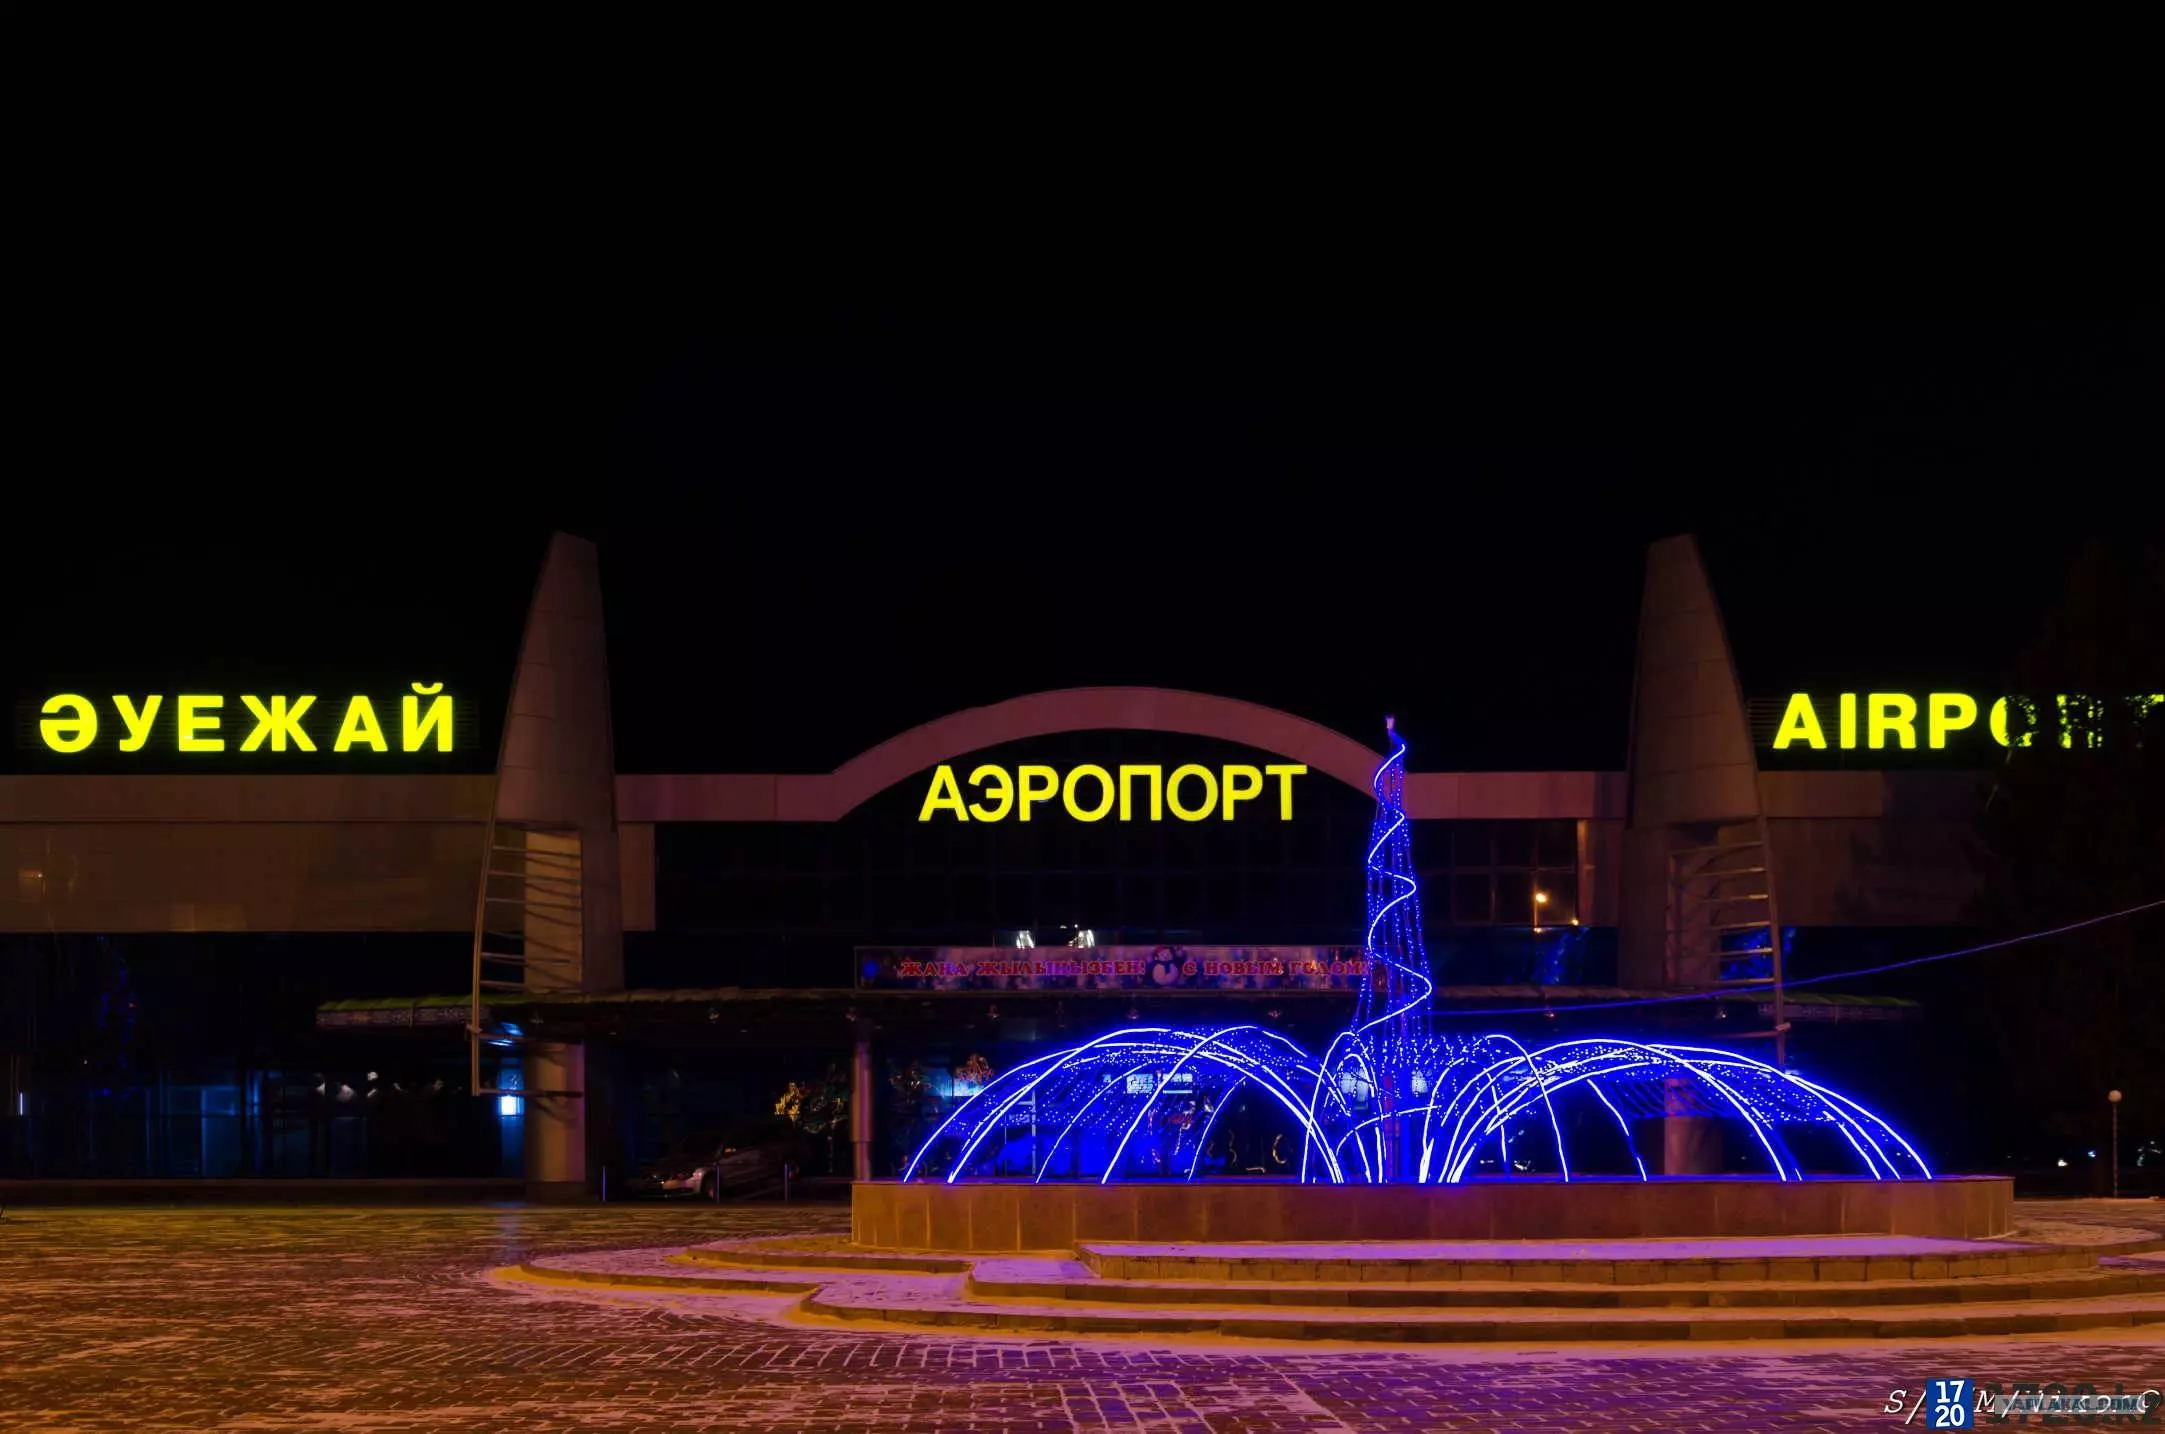 Аэропорт усть-каменогорск - история, инфраструктура, услуги, рейсы, транспорт